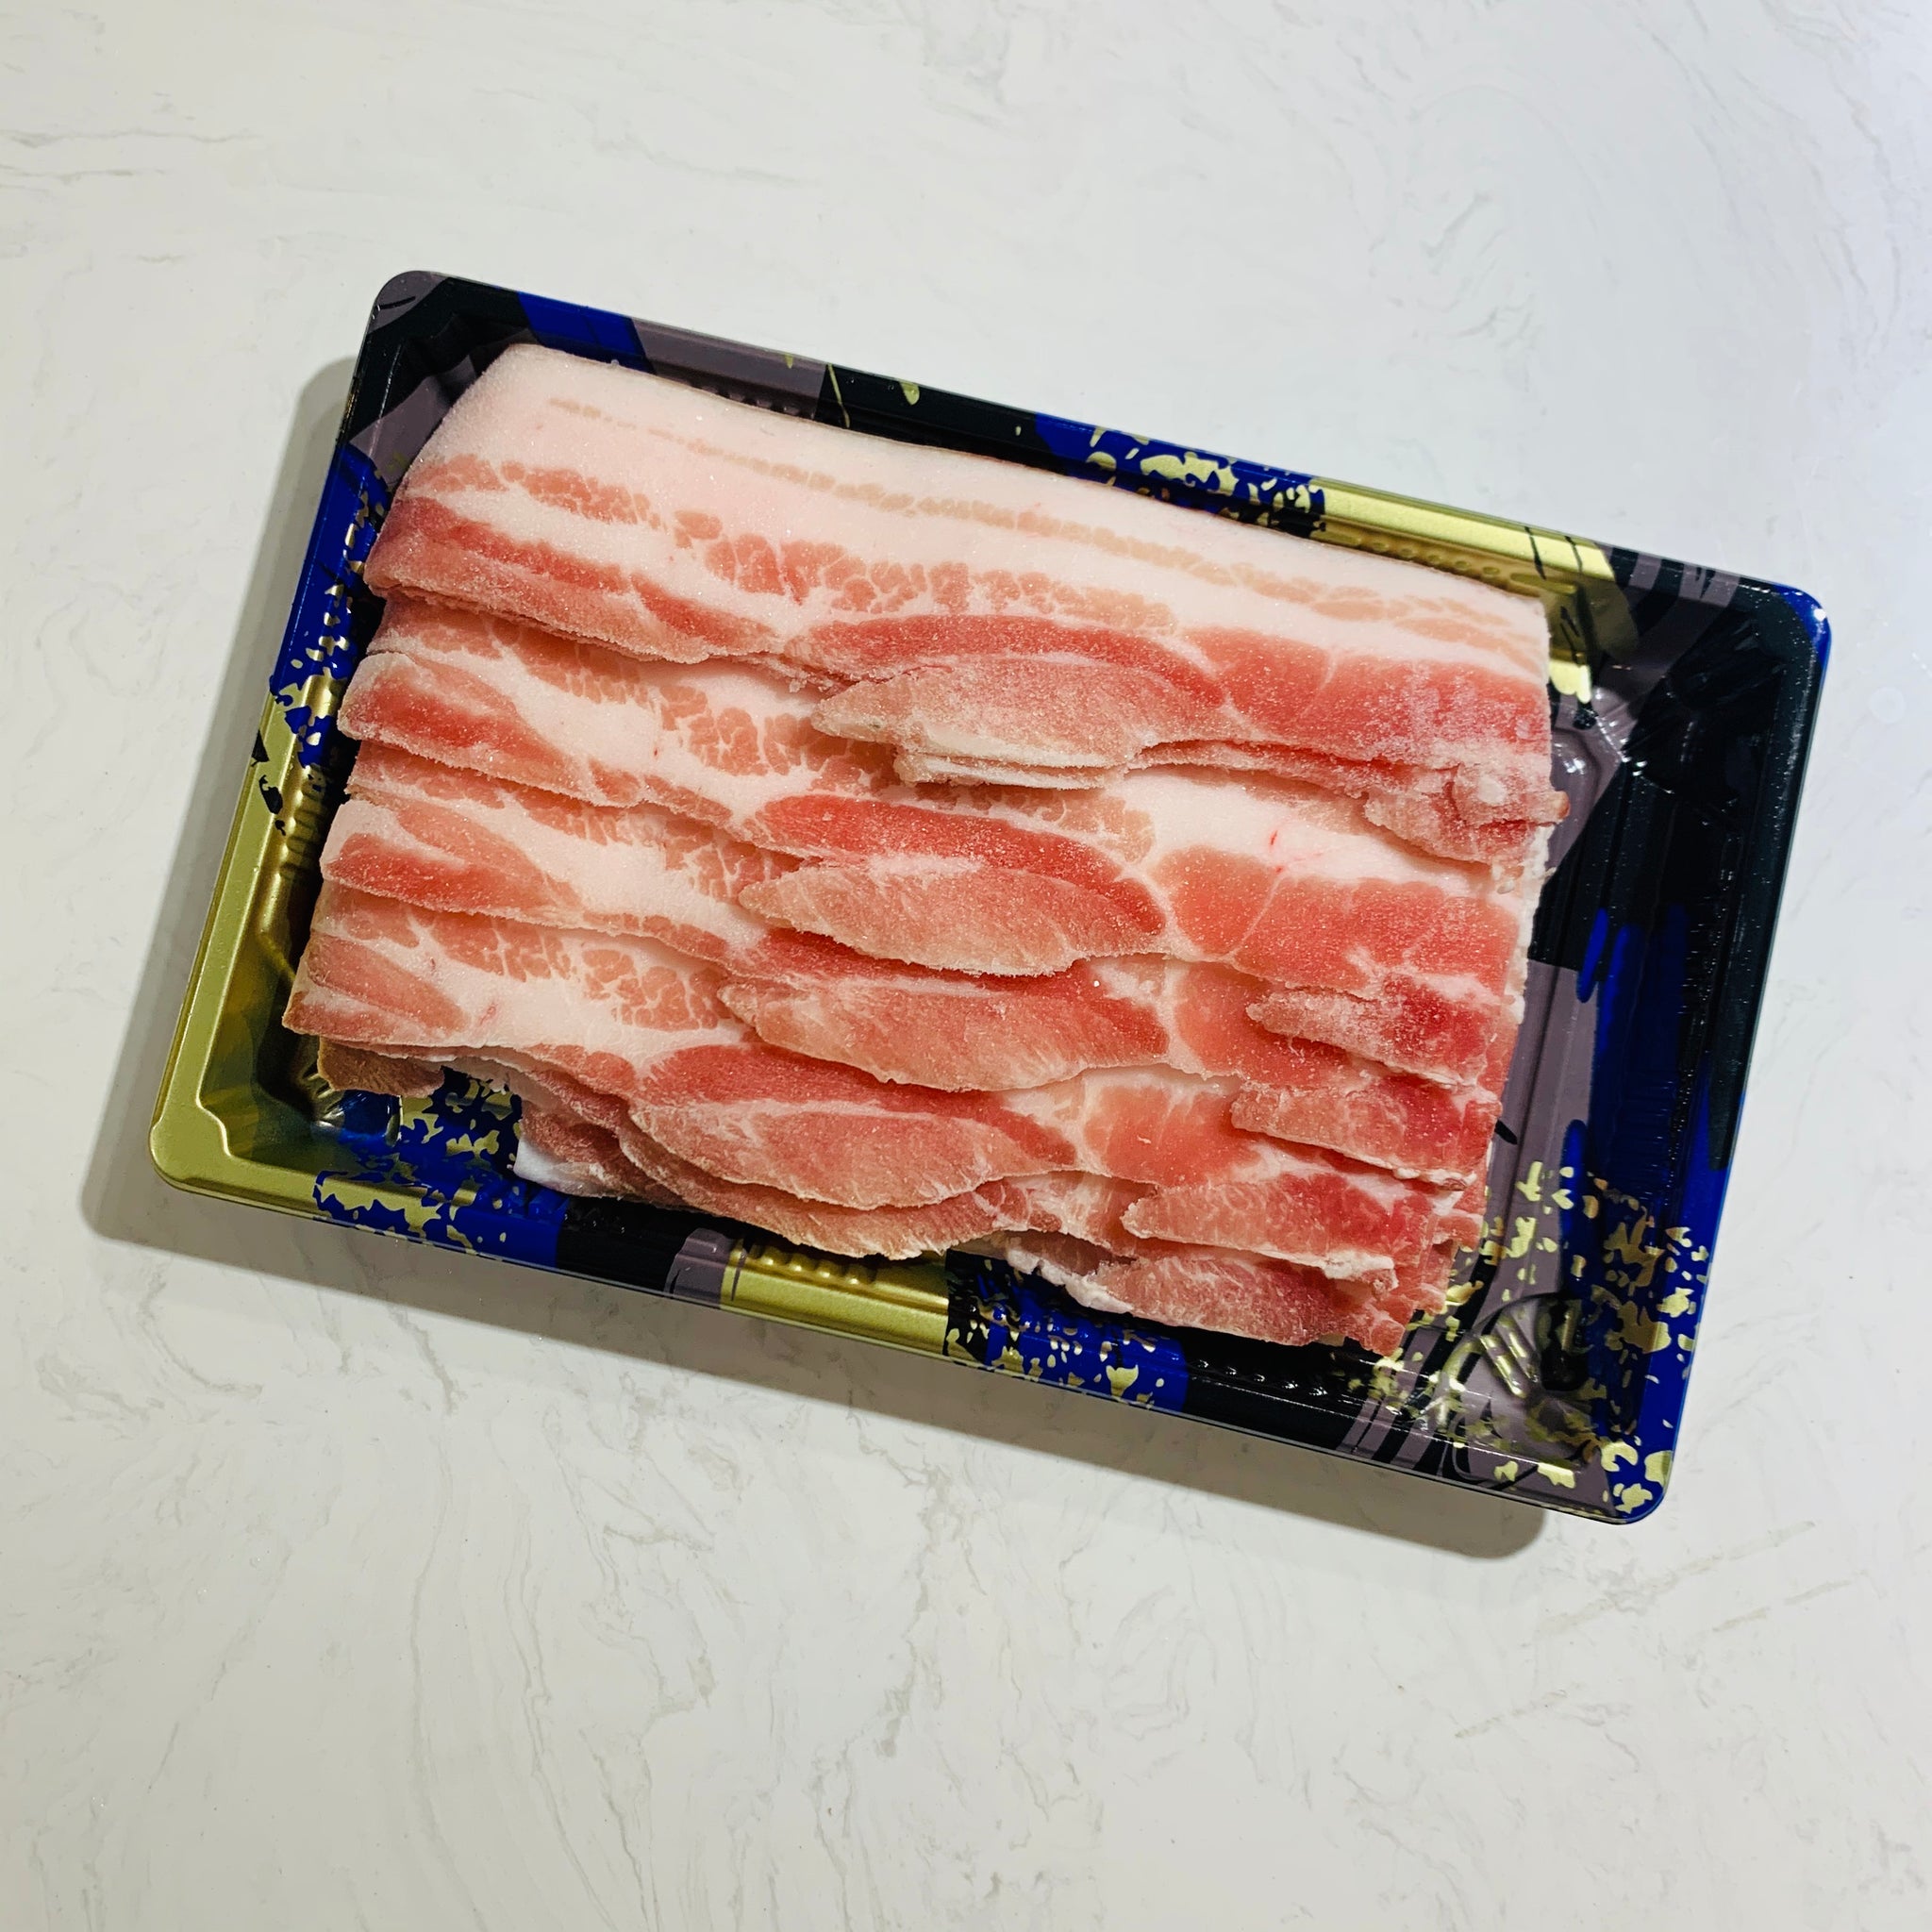 丹麥黑豚豬腩肉(0.5 磅)